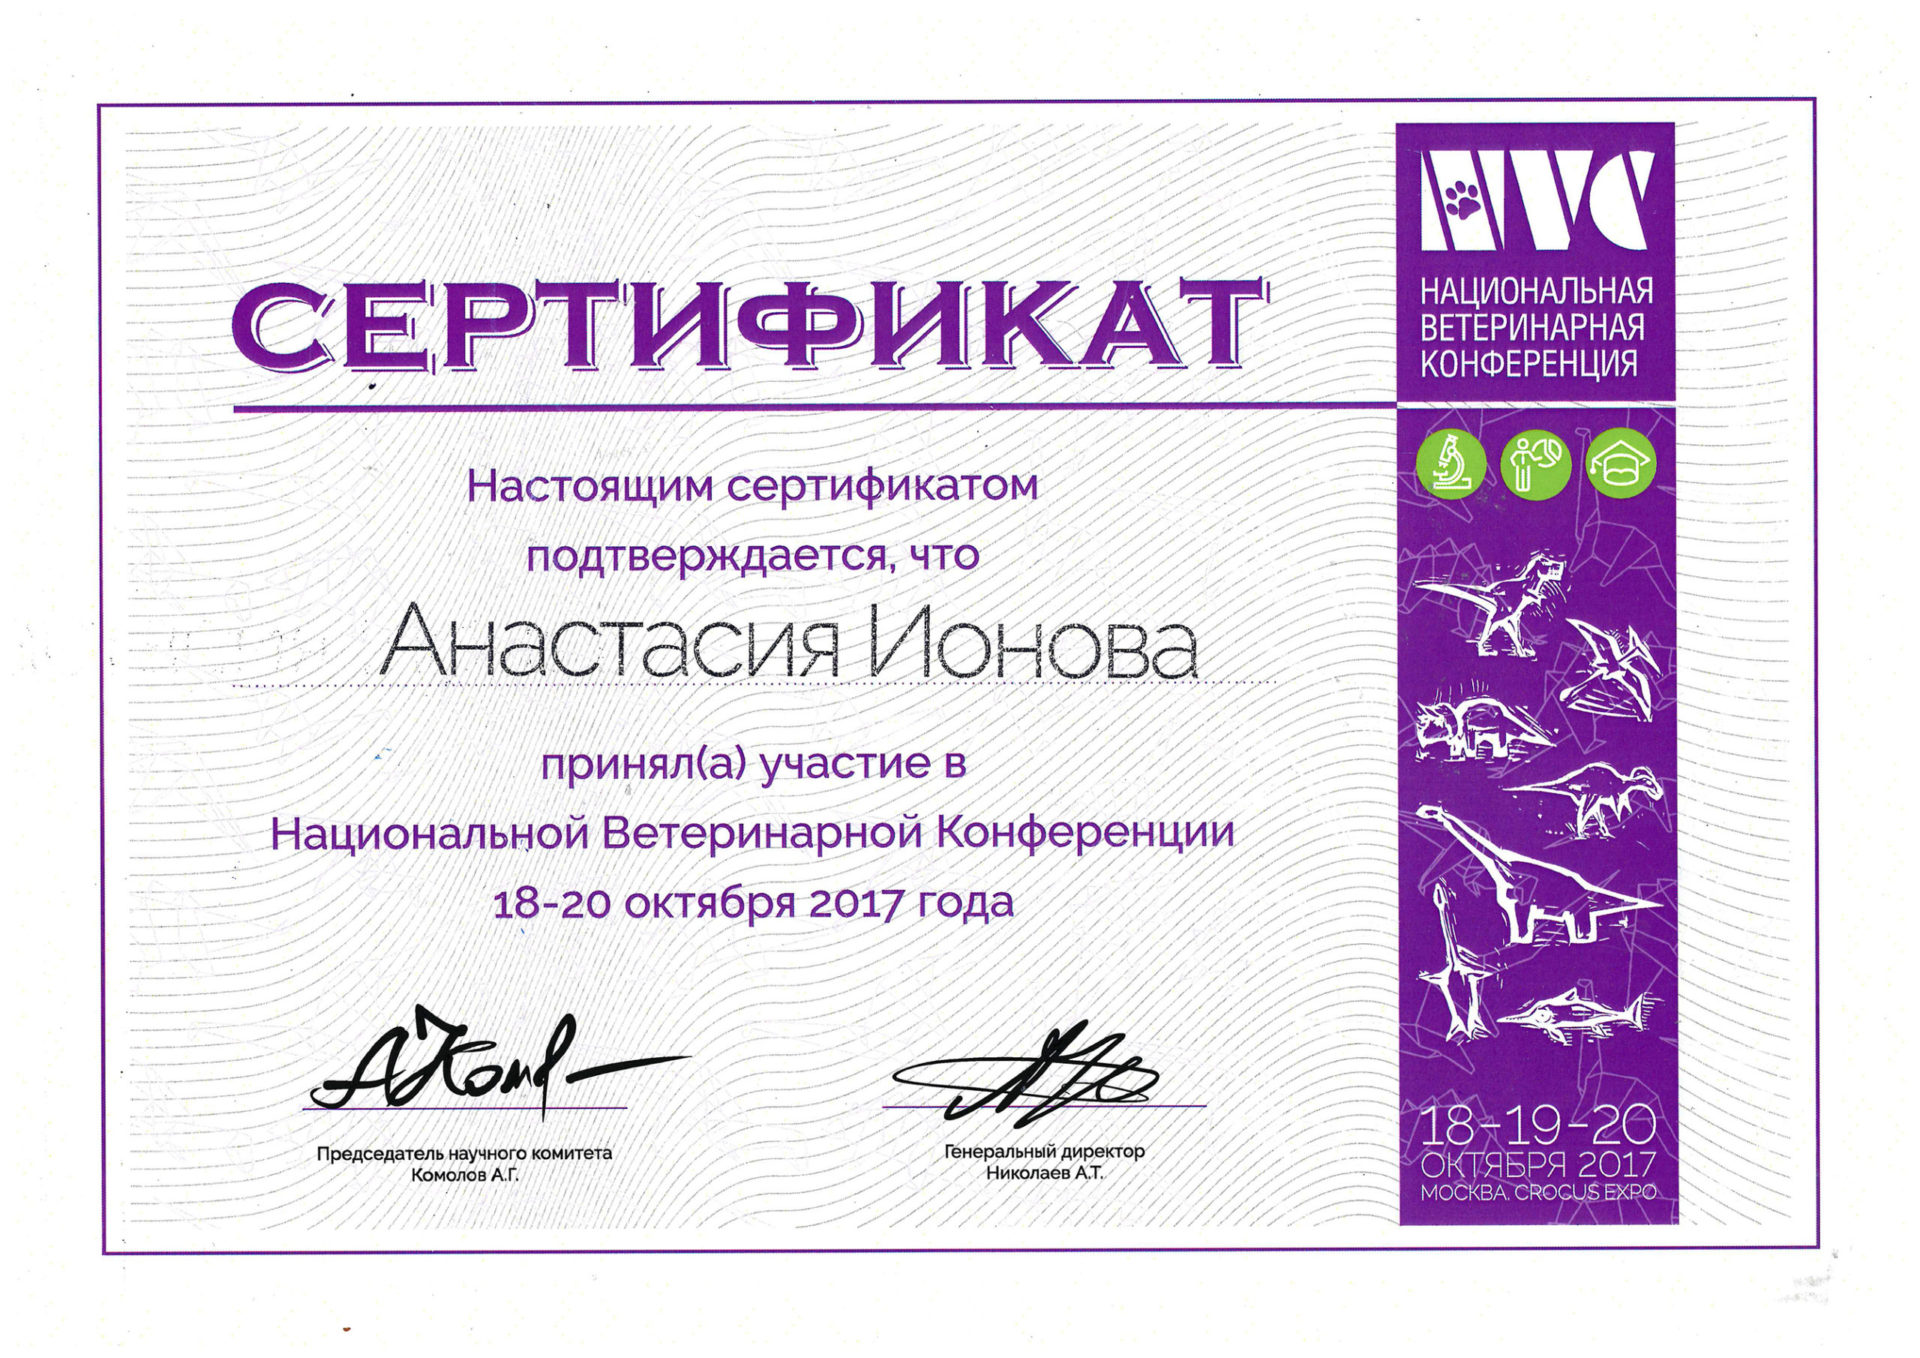 Сертификат Ионовой Анастасии Андреевны